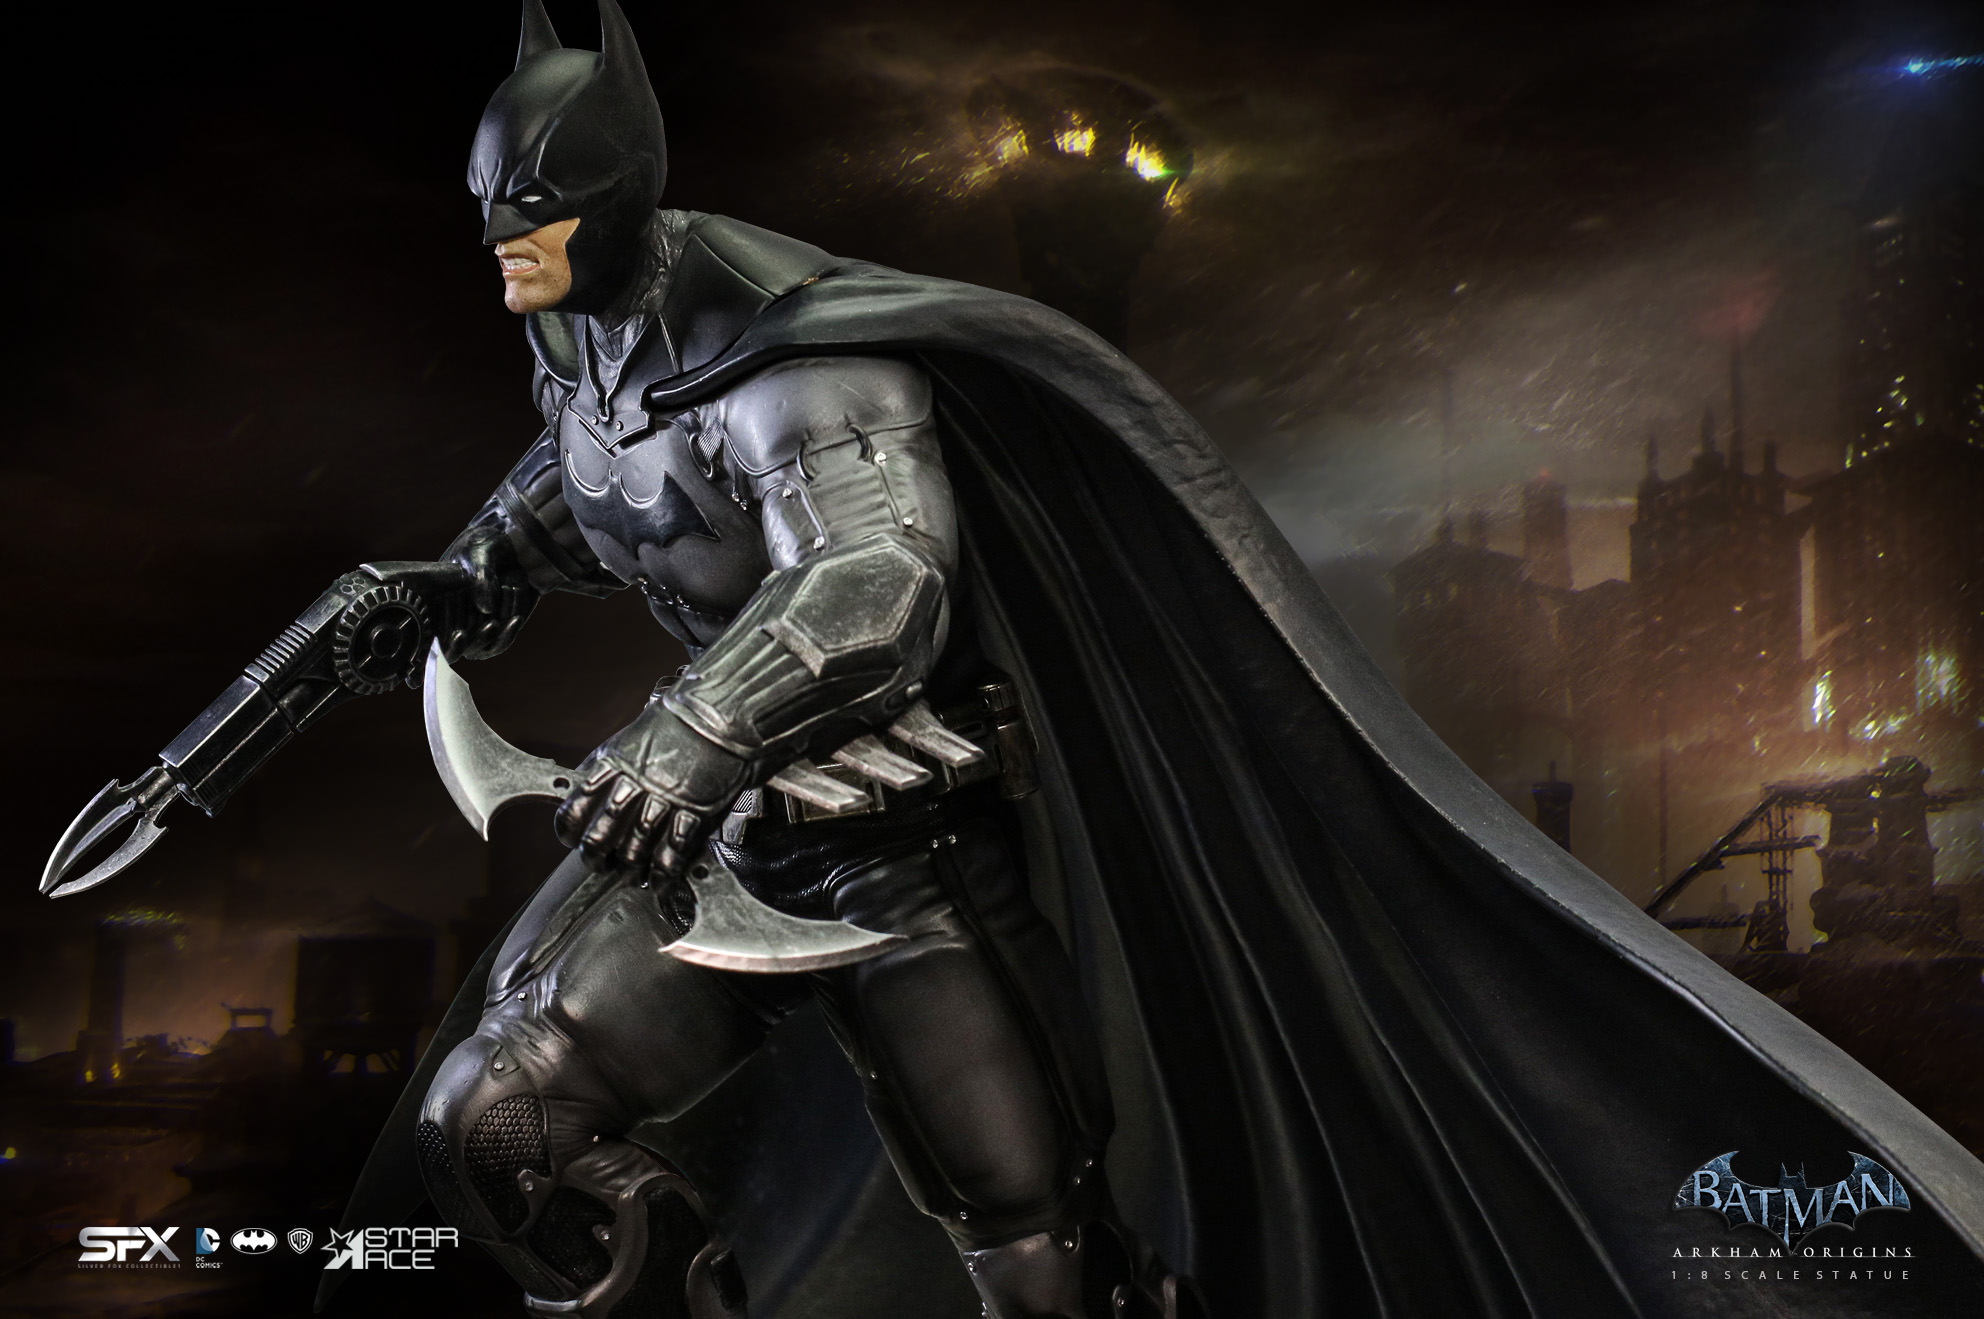 Batman Arkham Origins Exclusive Edition (Prototype Shown) View 17